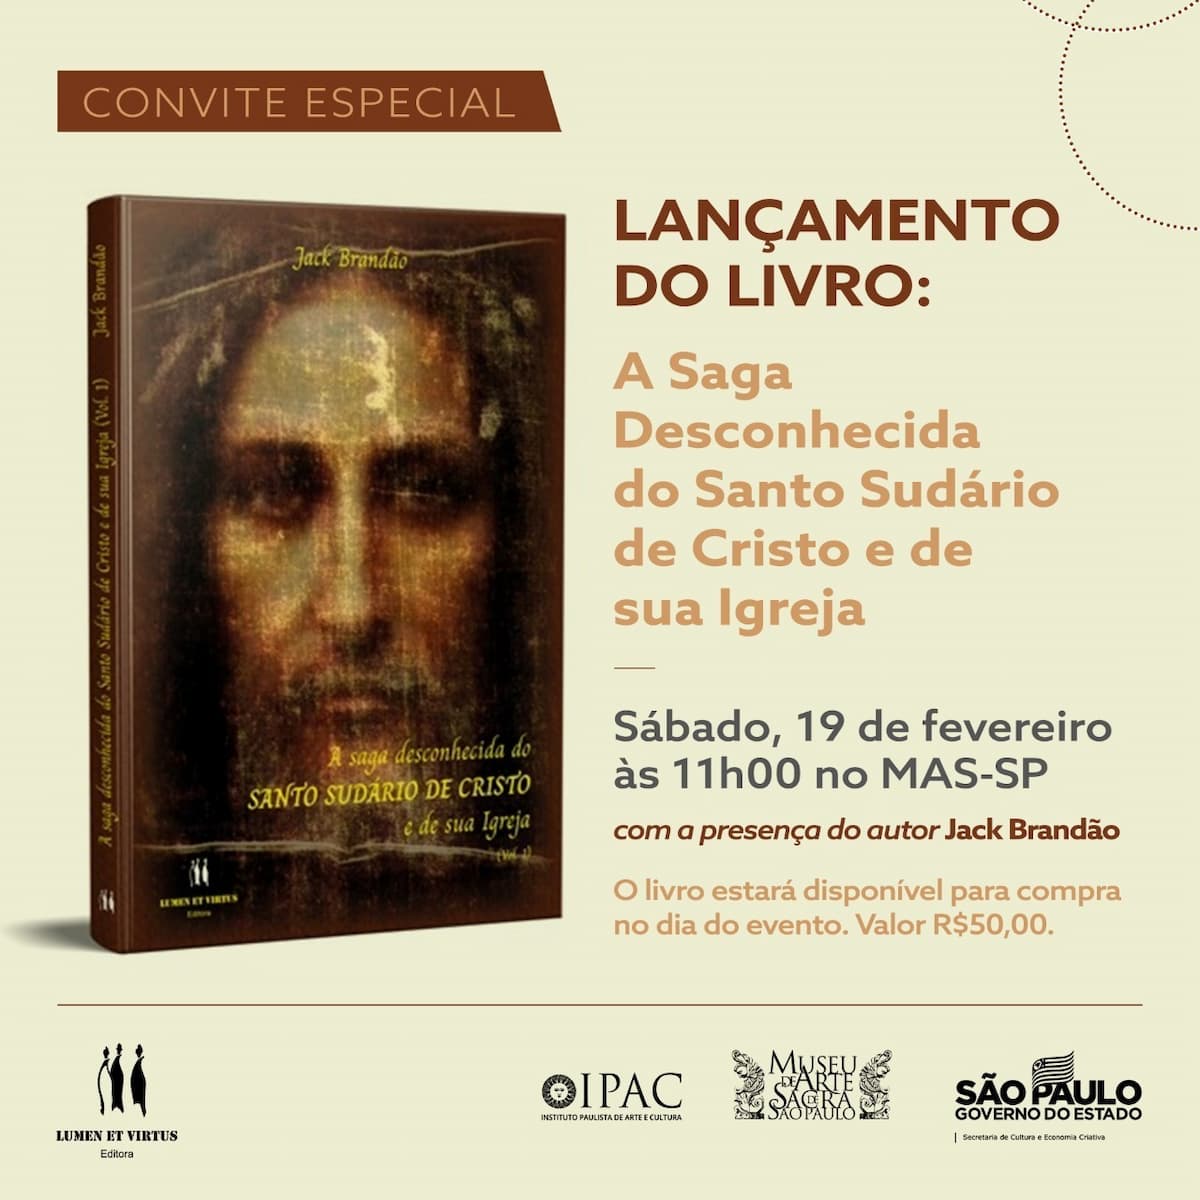 Livro "A saga desconhecida do SUDÁRIO DE CRISTO e de sua Igreja", كتاب - غطاء, دعوة. الكشف.